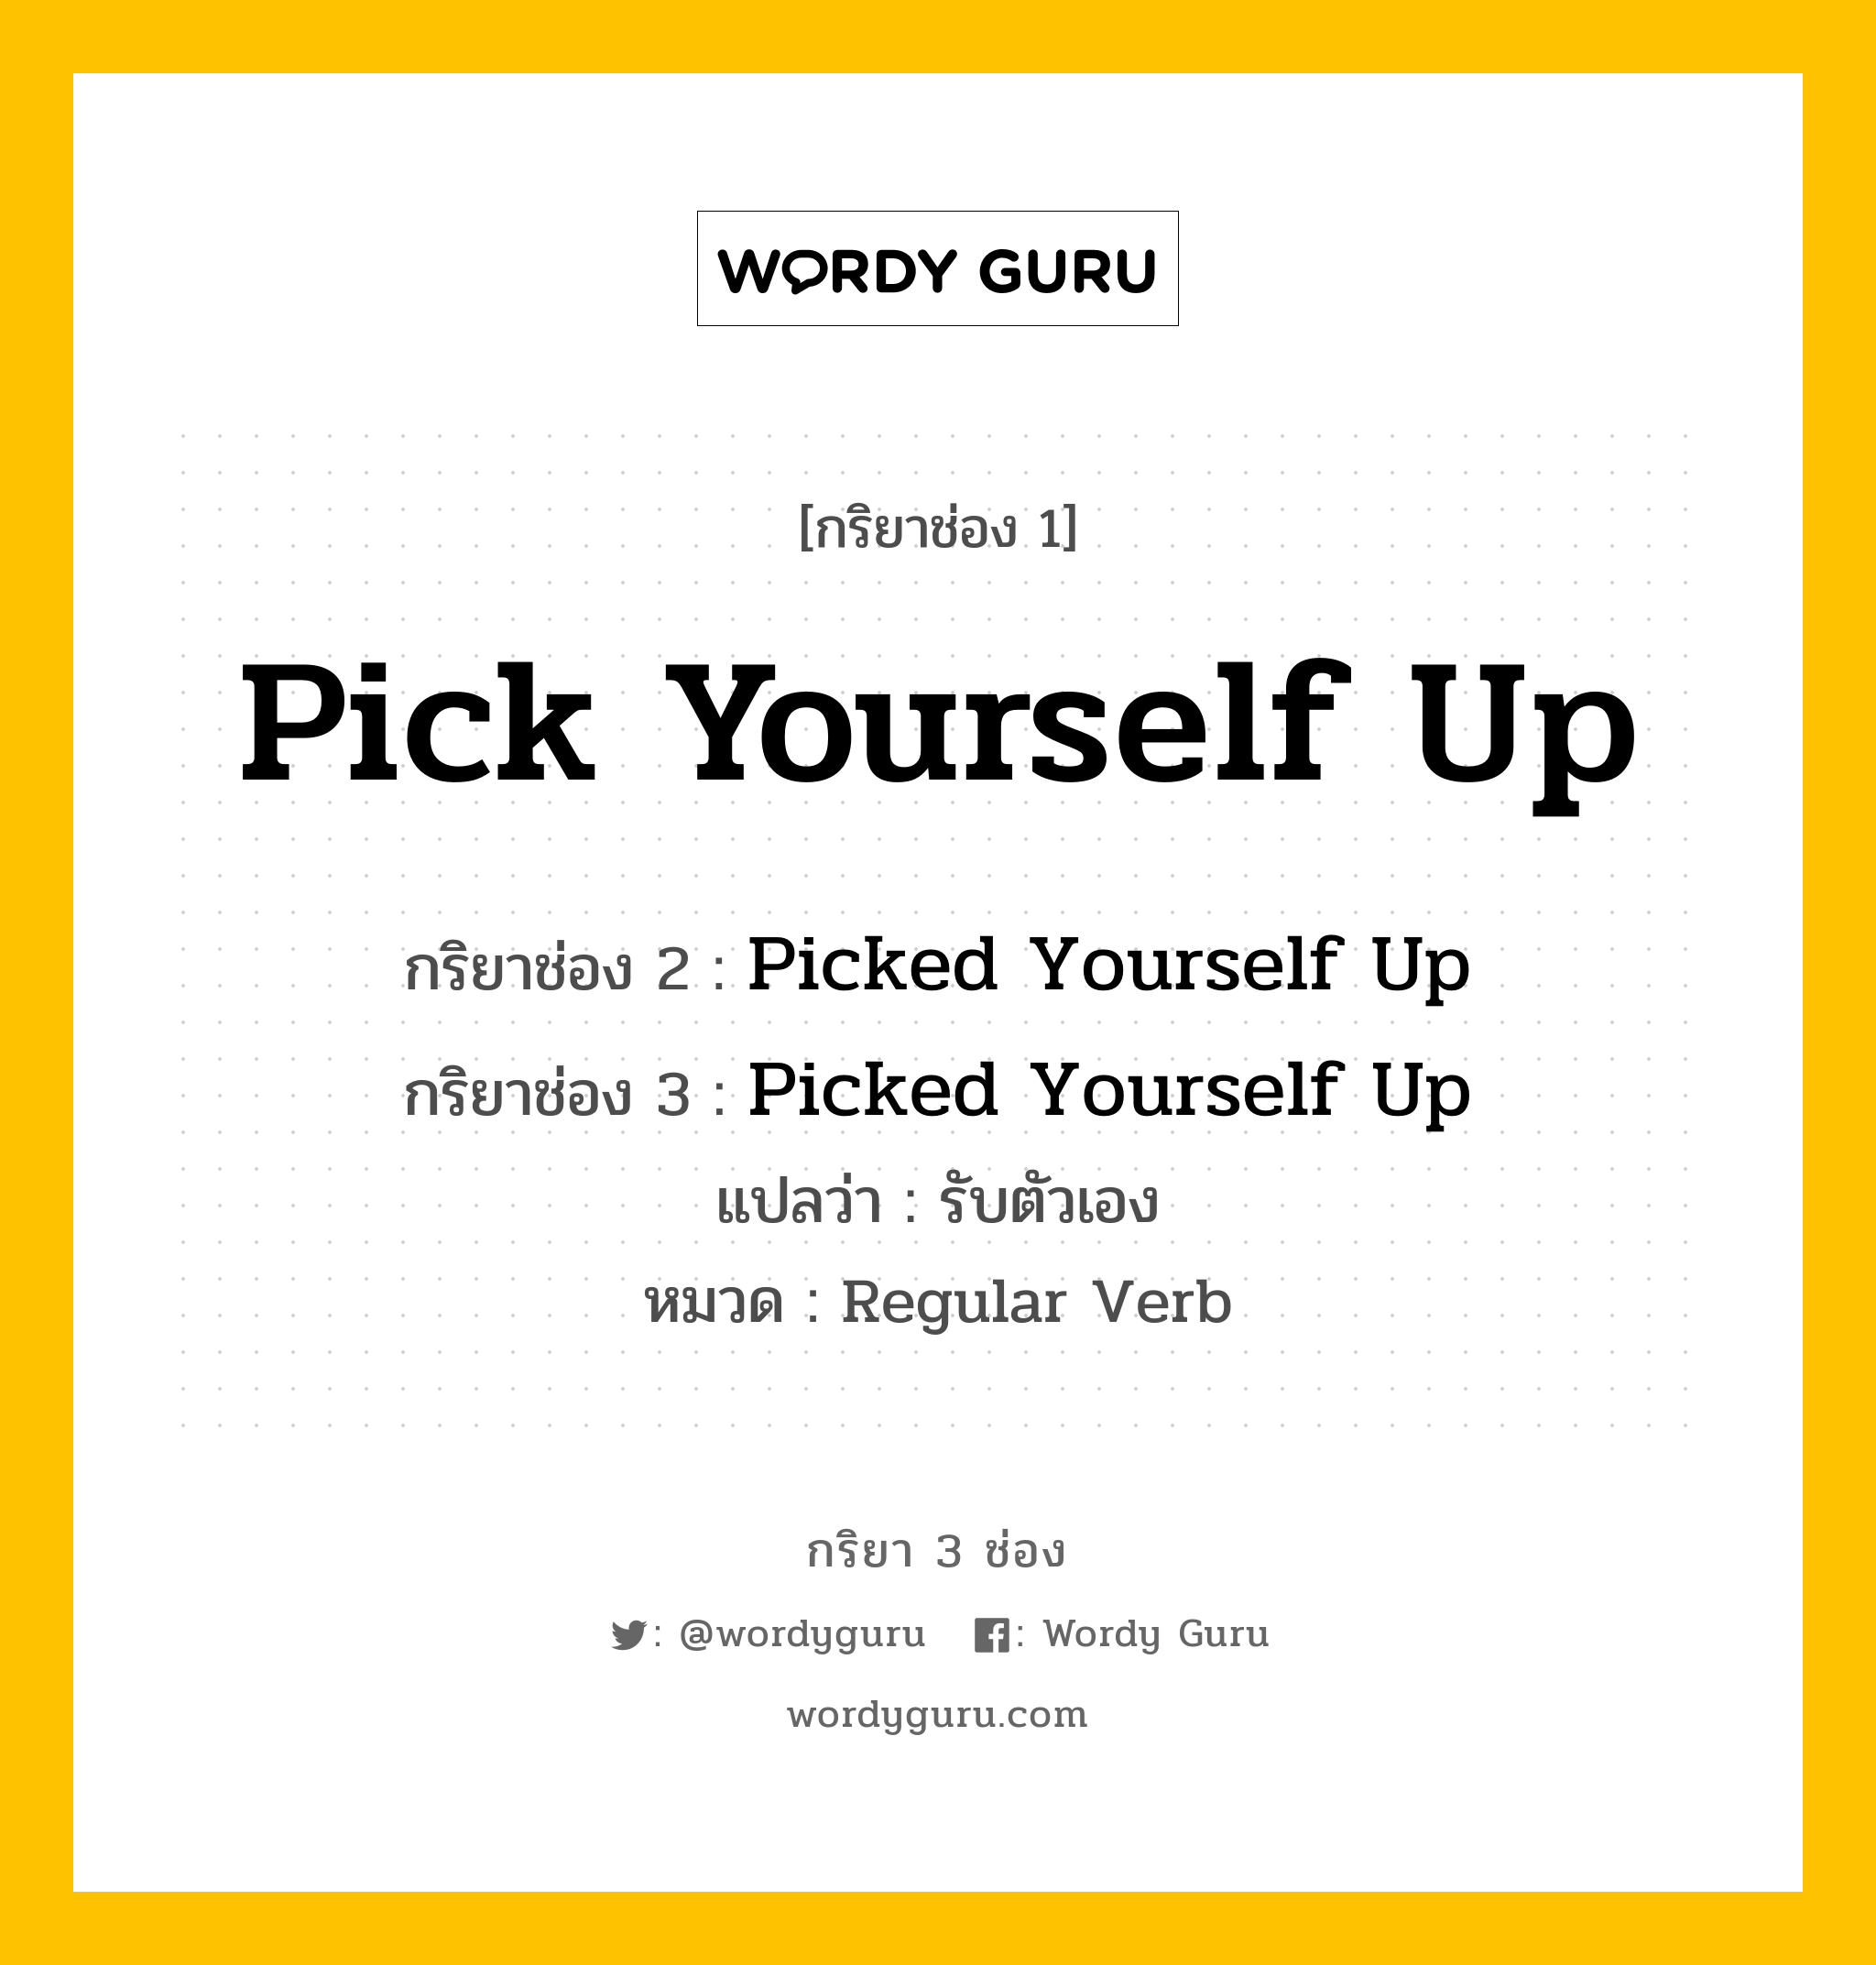 กริยา 3 ช่อง: Pick Yourself Up ช่อง 2 Pick Yourself Up ช่อง 3 คืออะไร, กริยาช่อง 1 Pick Yourself Up กริยาช่อง 2 Picked Yourself Up กริยาช่อง 3 Picked Yourself Up แปลว่า รับตัวเอง หมวด Regular Verb หมวด Regular Verb